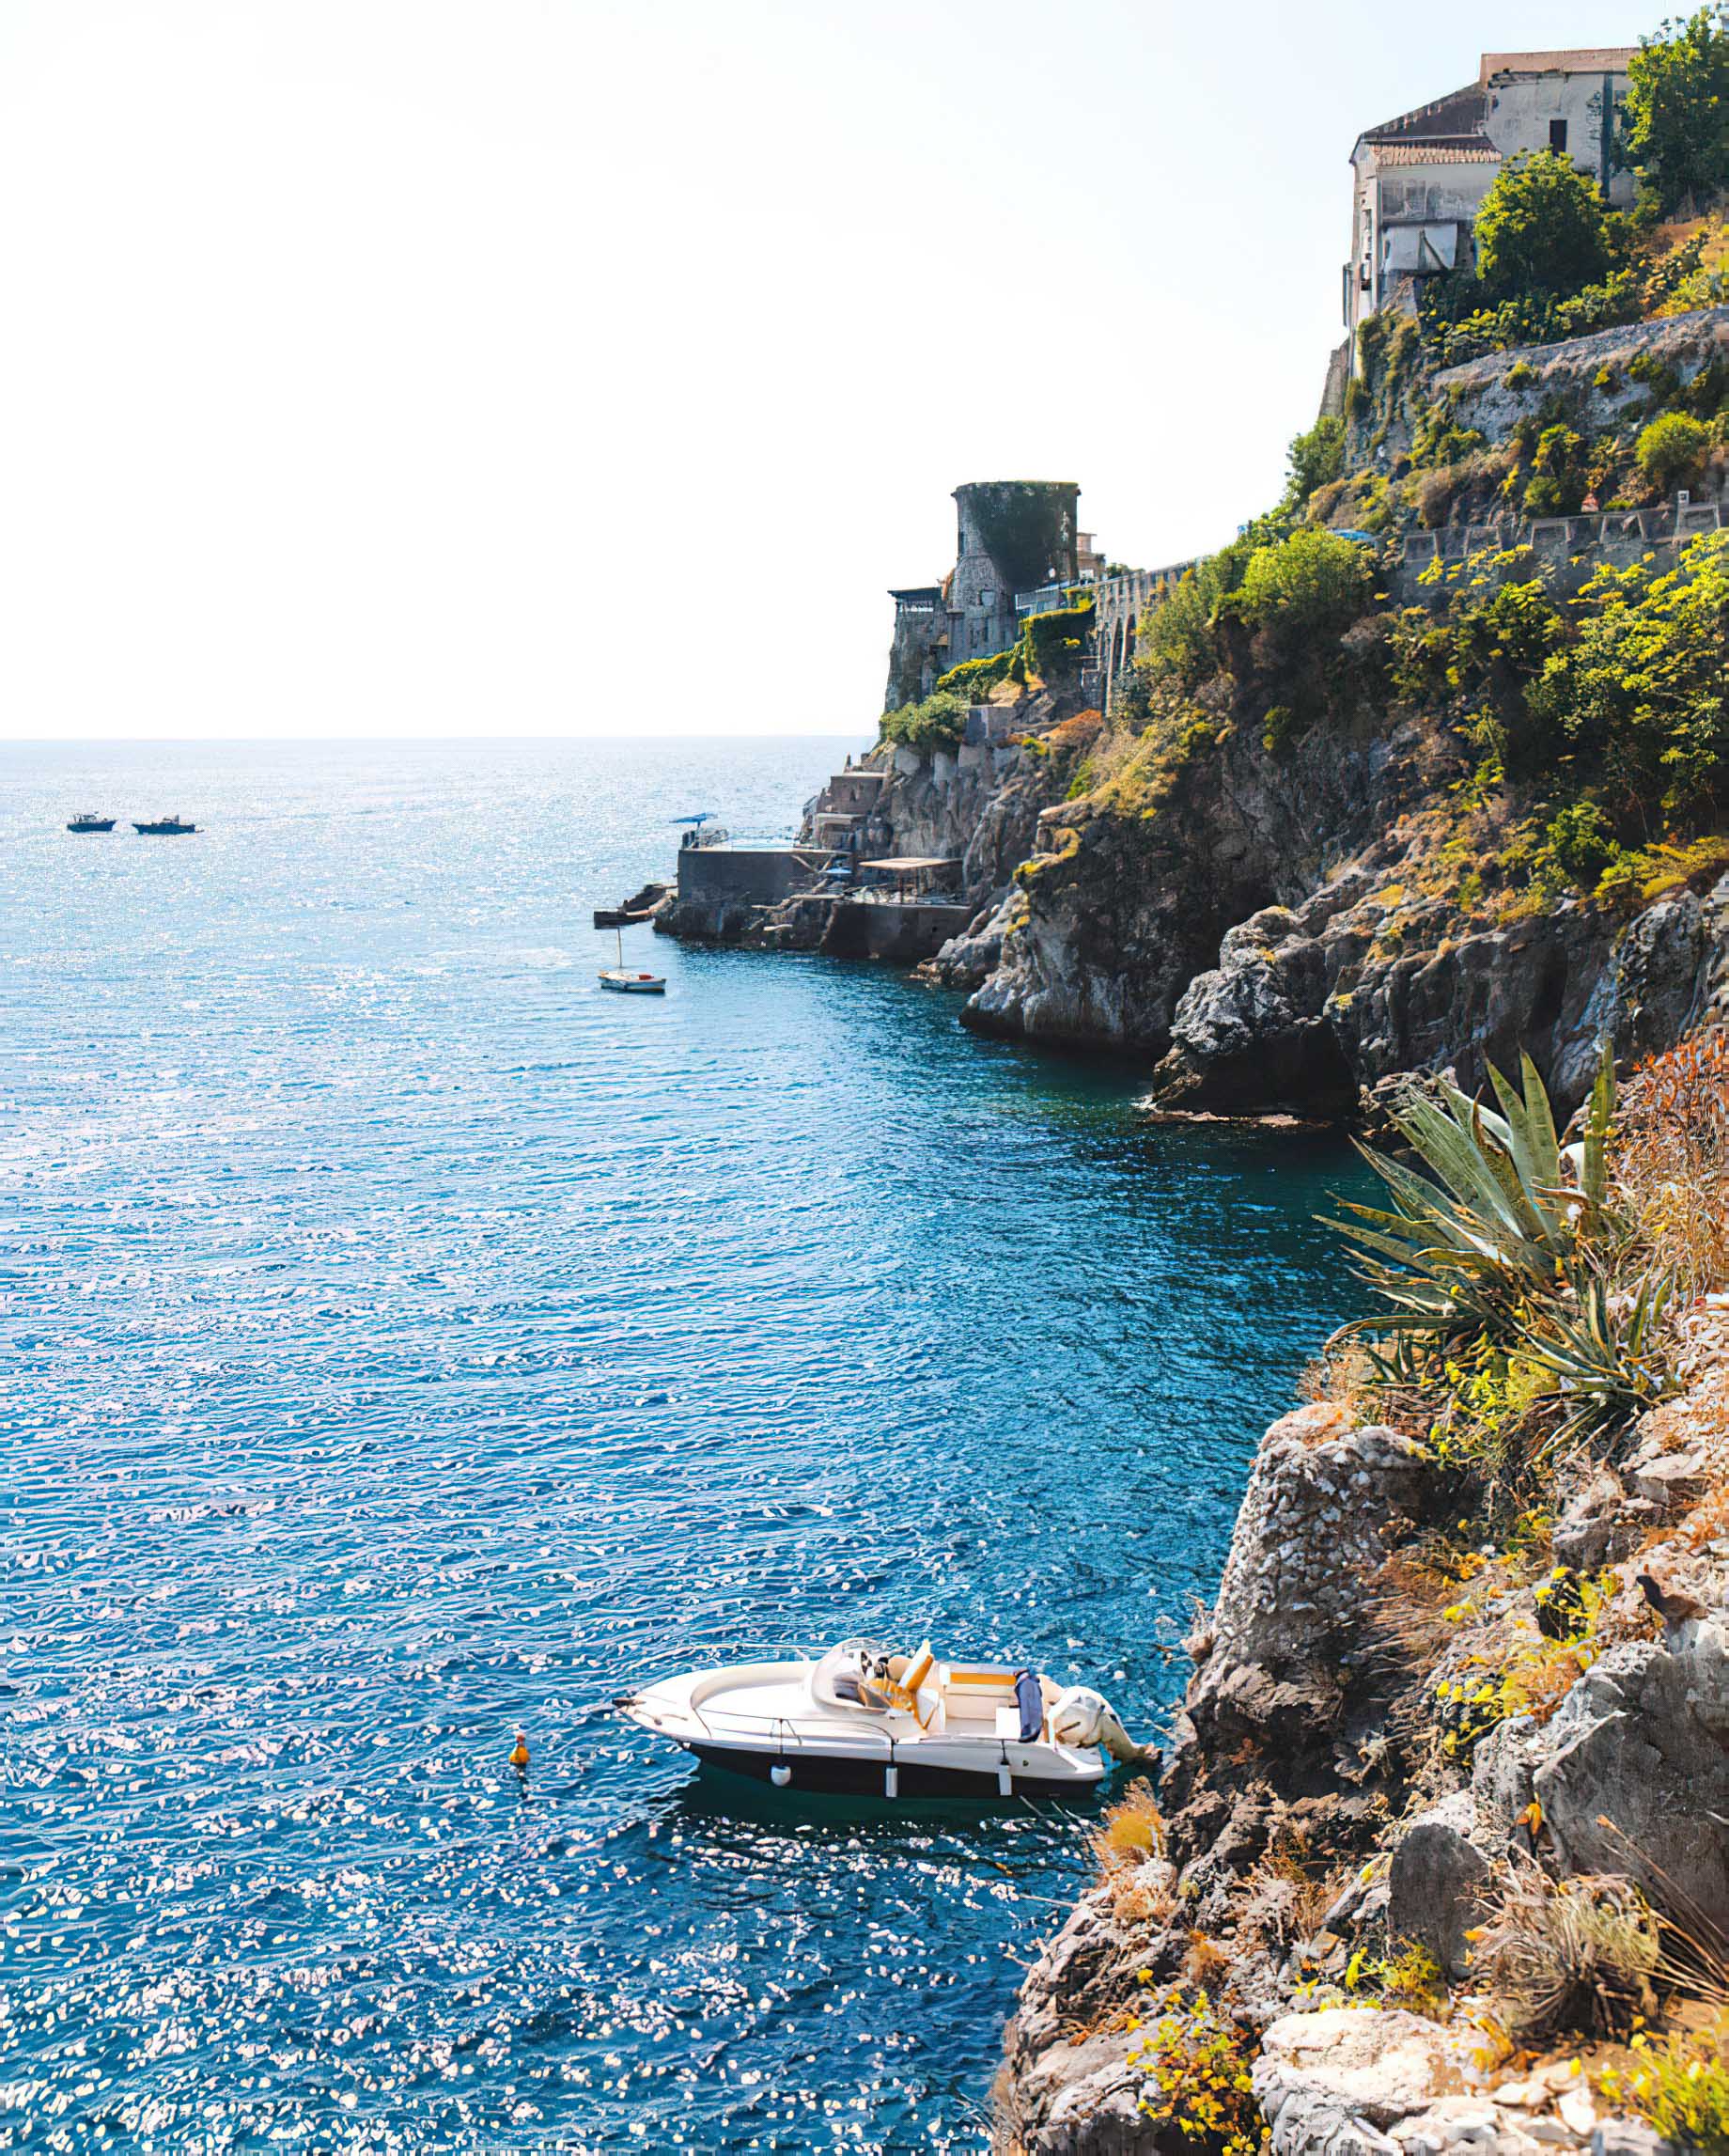 Caruso, A Belmond Hotel, Amalfi Coast - Ravello, Italy - Amalfi Coast Boating